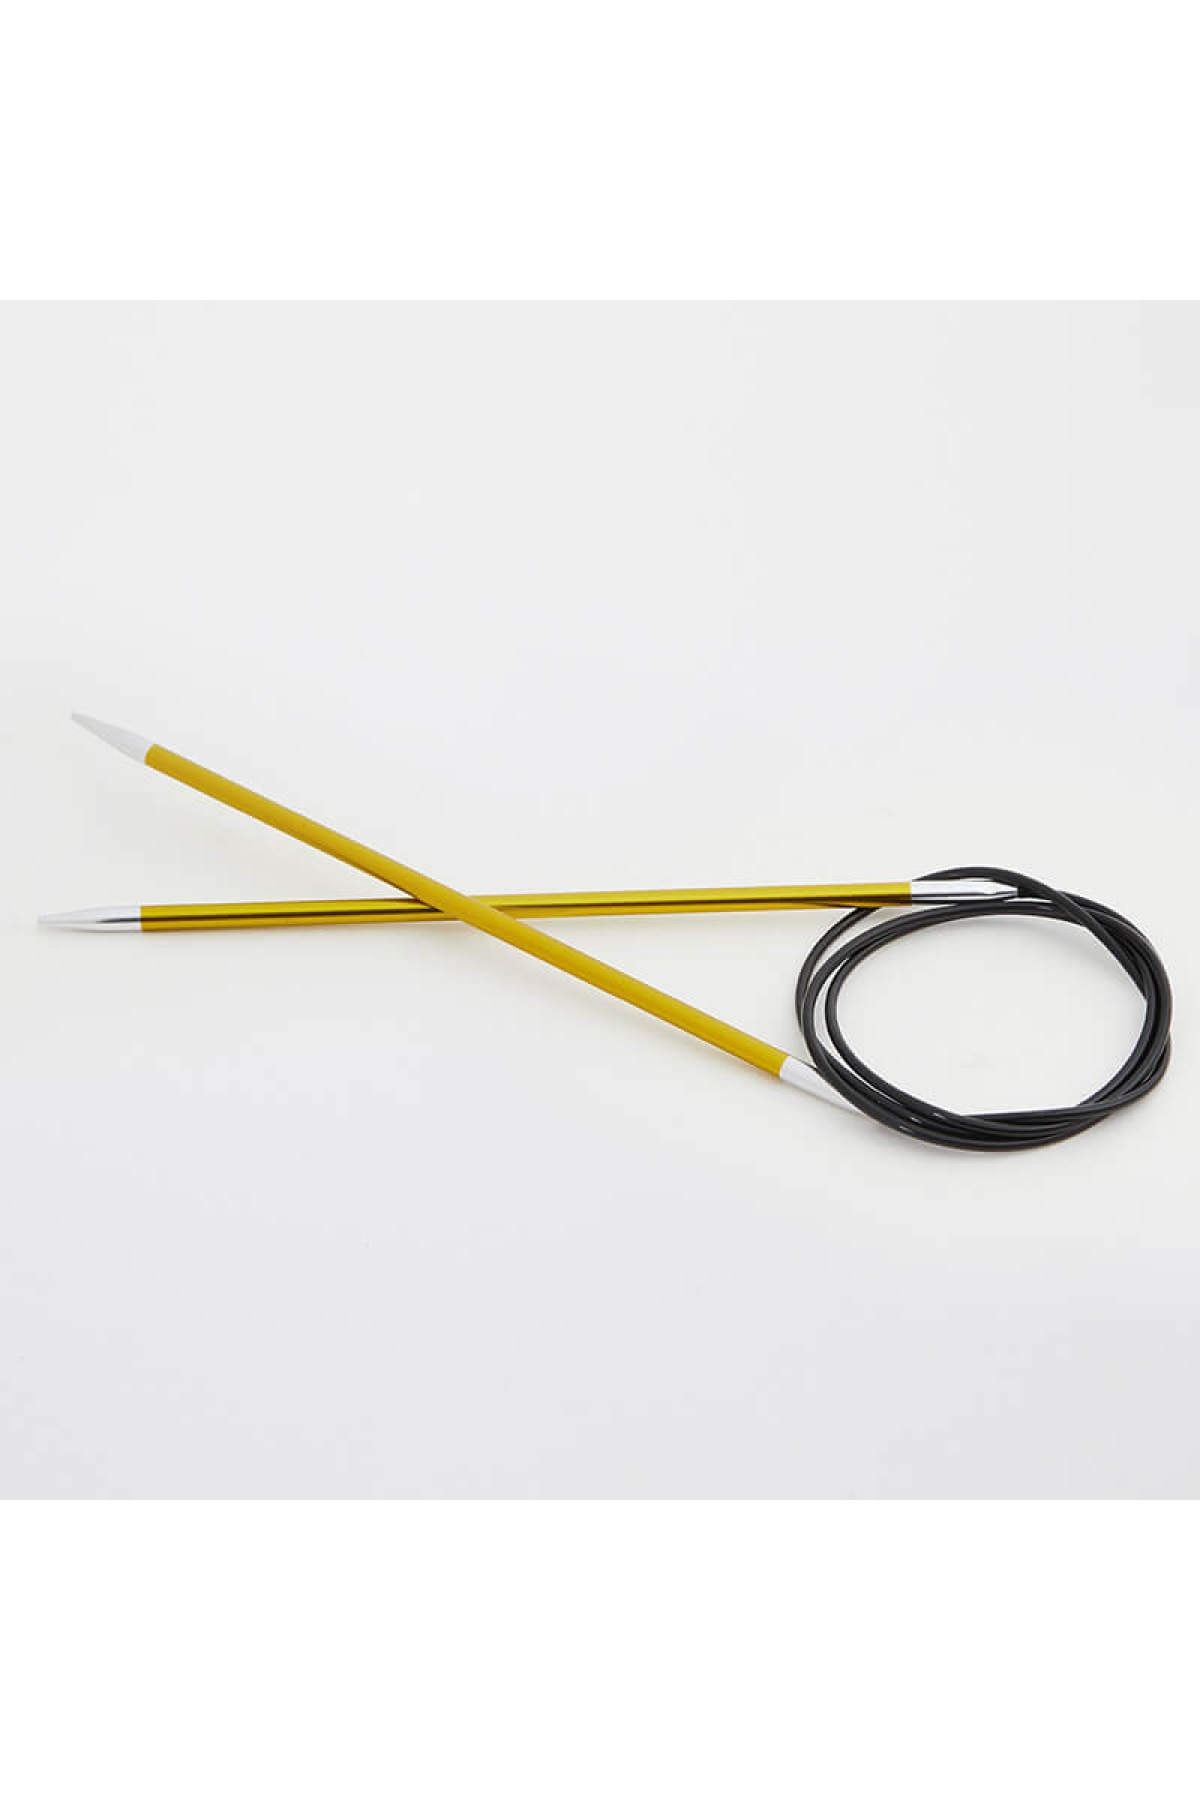 Knitpro Zing Sabit Misinalı Şiş 40cm / 3,50mm